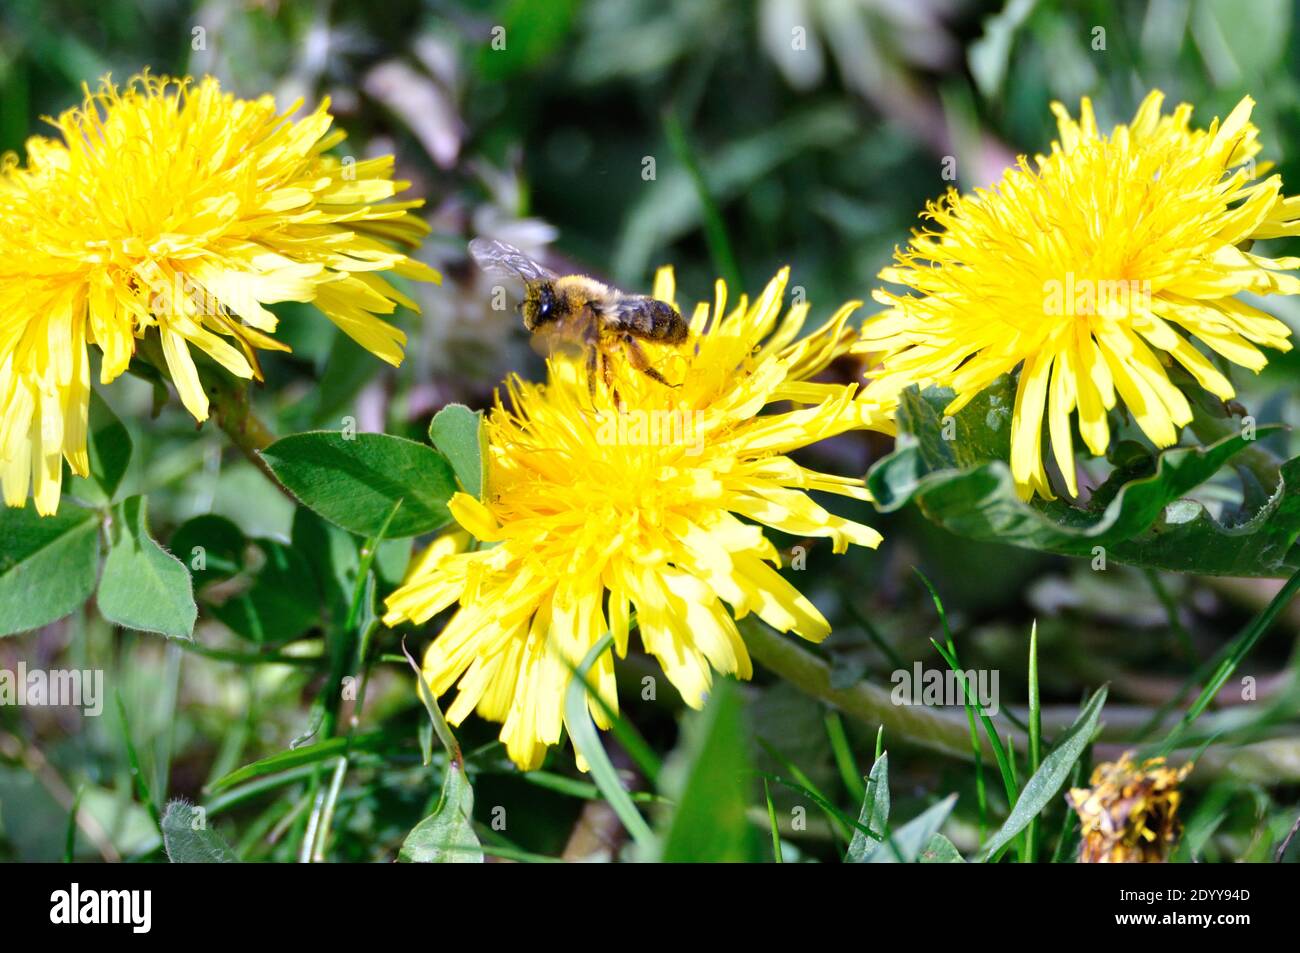 Eine Biene begeistert sich für eine leuchtend gelbe Löwenzahnblüte. - A bee is enthusiastic about a bright yellow dandelion blossom. Stock Photo